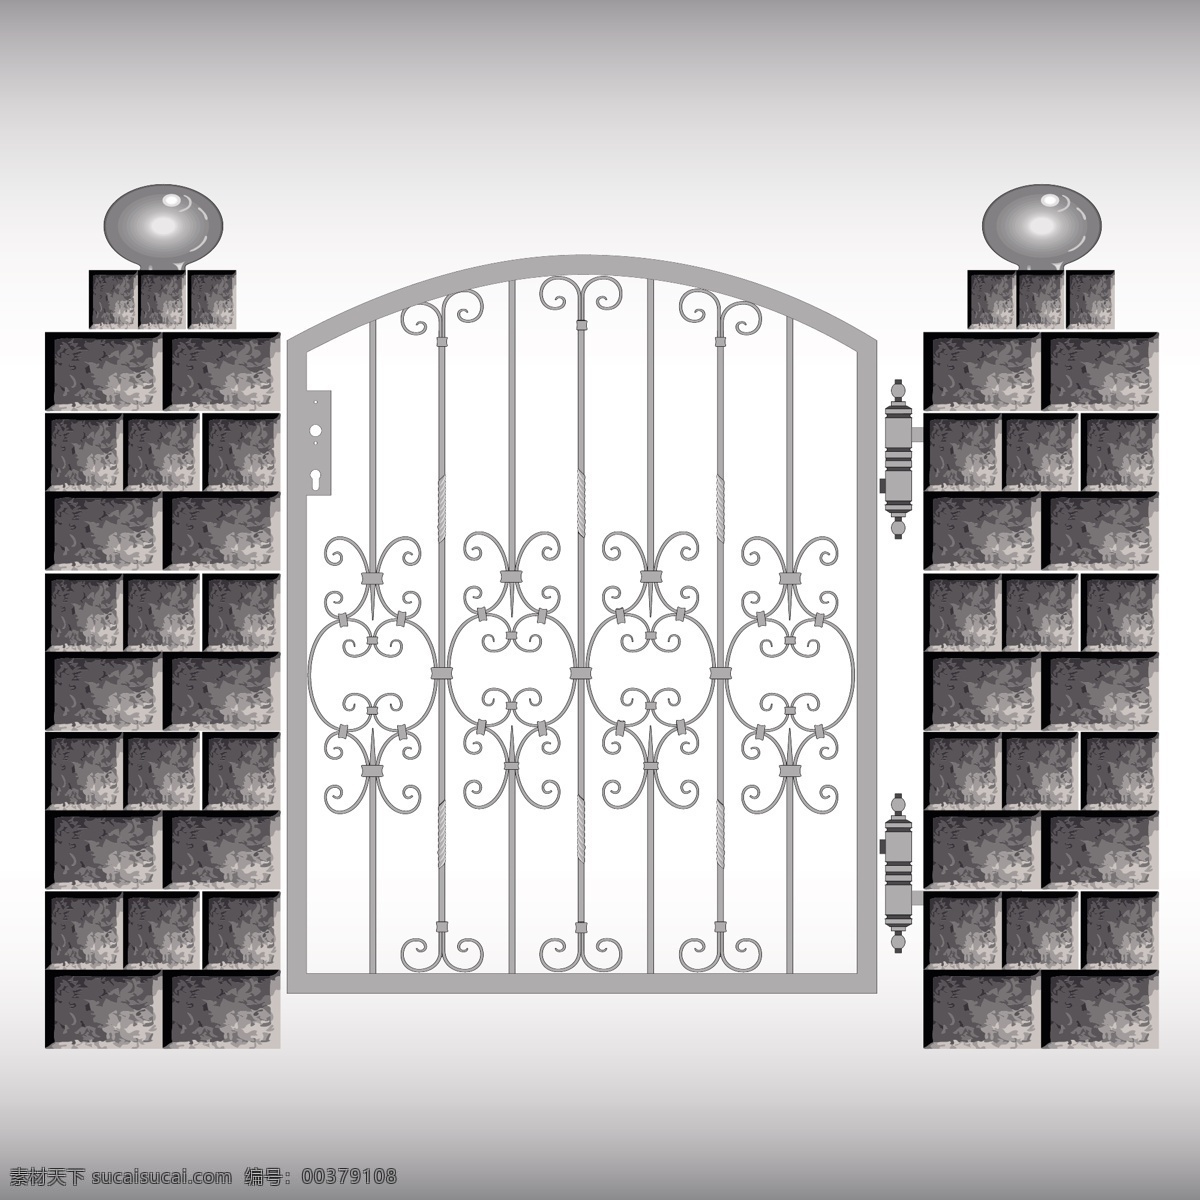 围墙与铁门 围墙 柱子 铁门 投影 线条图 门 铁艺 其他模板 矢量素材 白色